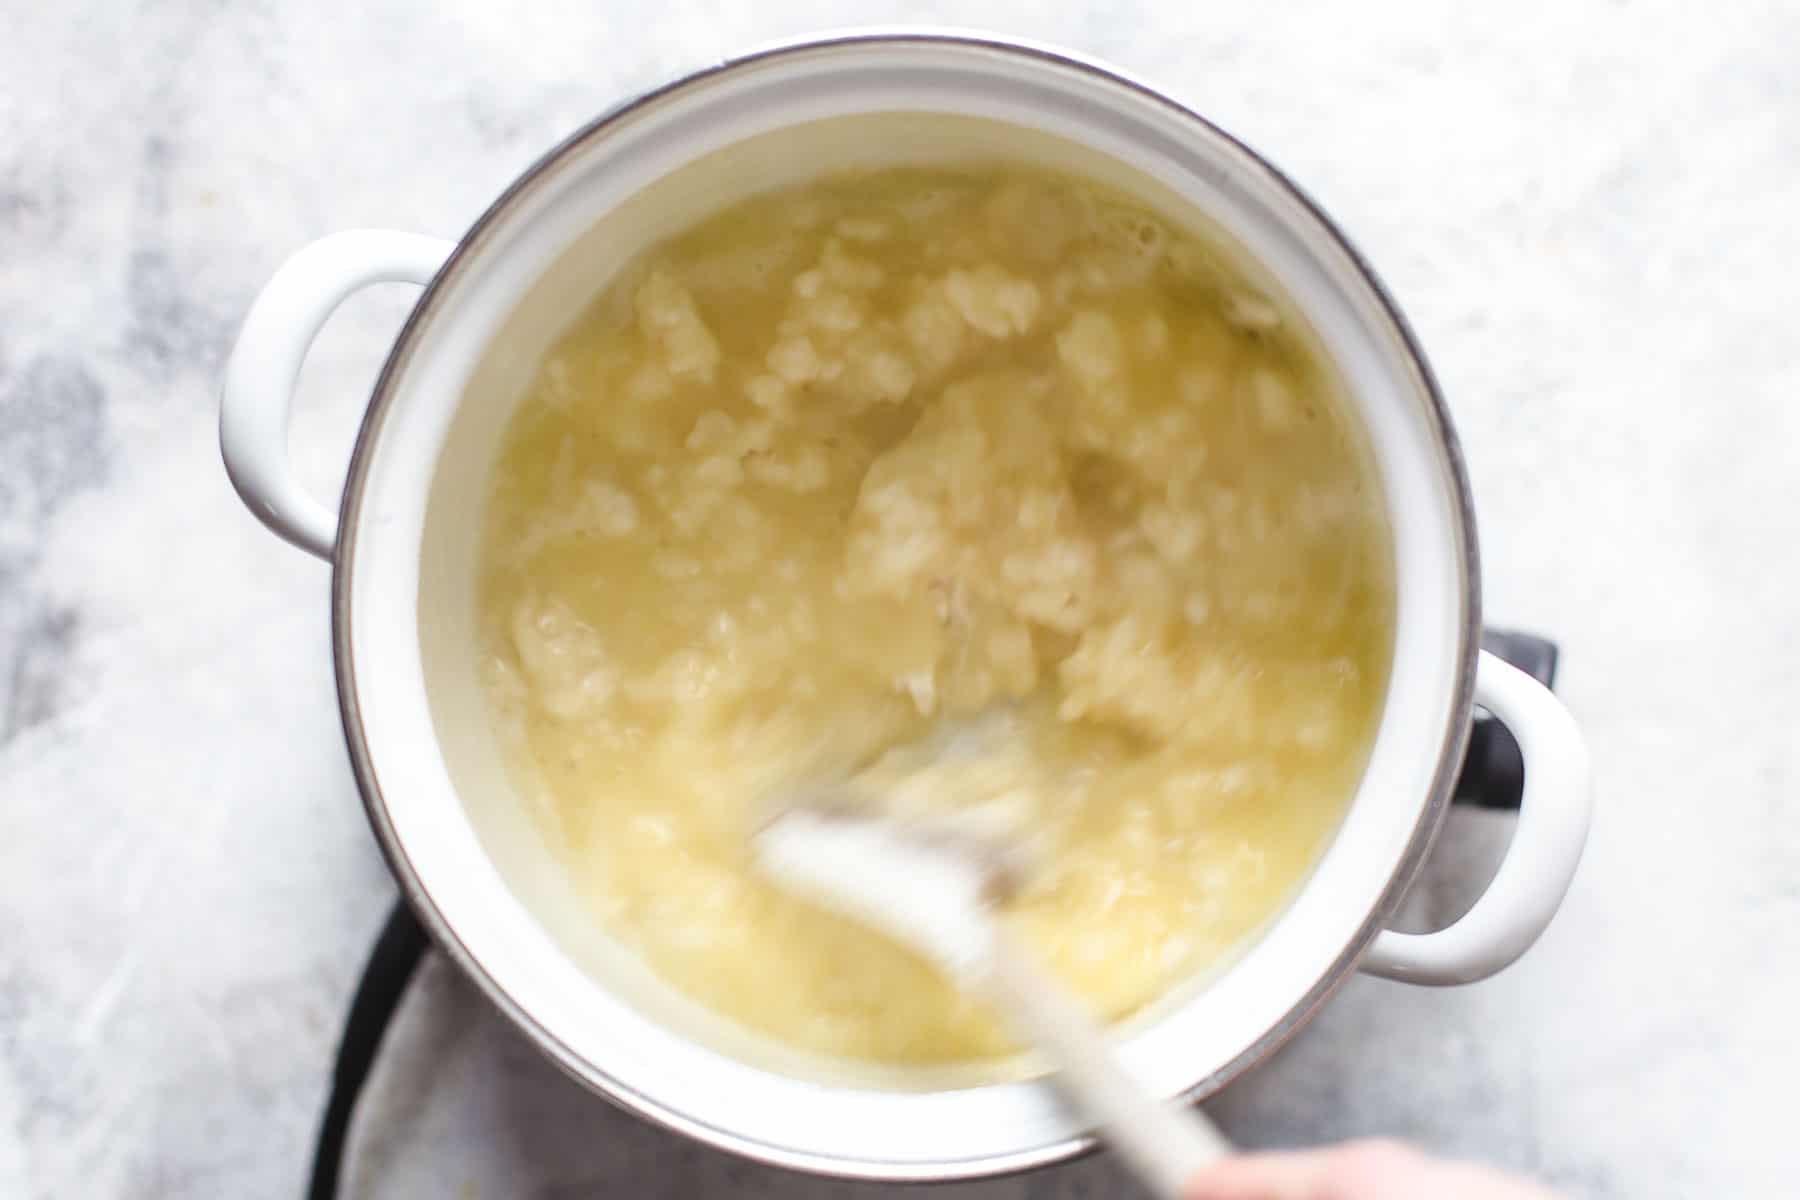 making pate a choux: adding flour to saucepan